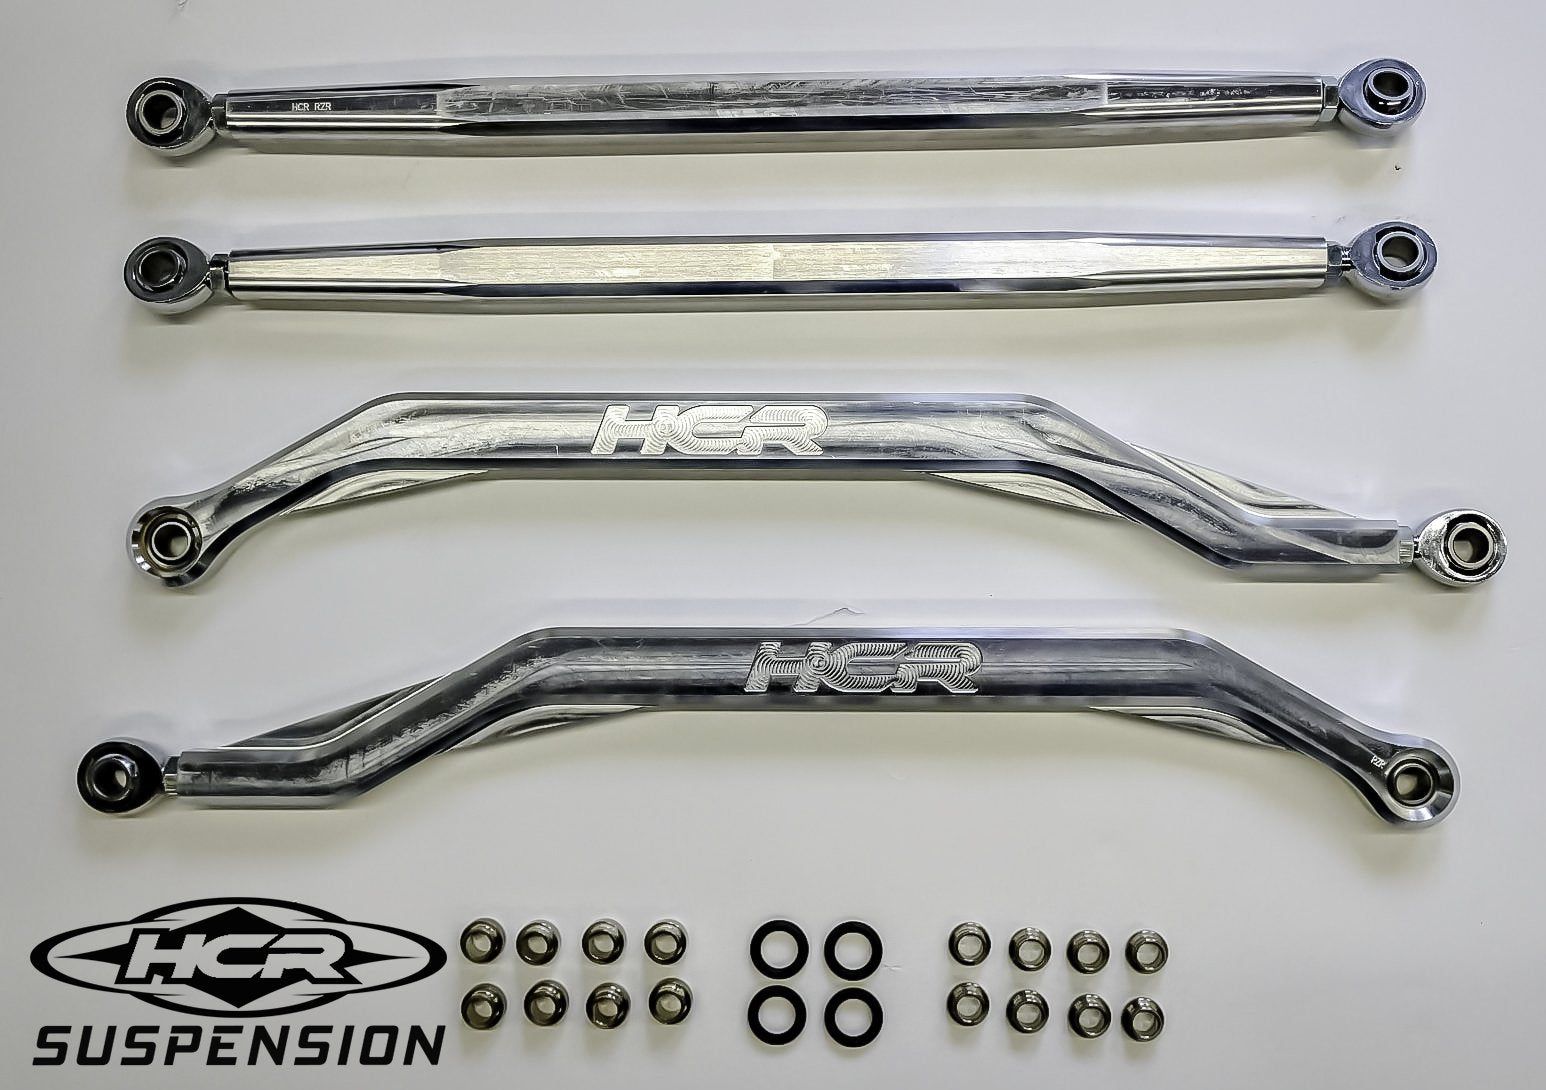 HCR Suspension RZR-05406-10 Aluminum High Link Set for RZR XP 1000 HCR Long-Travel